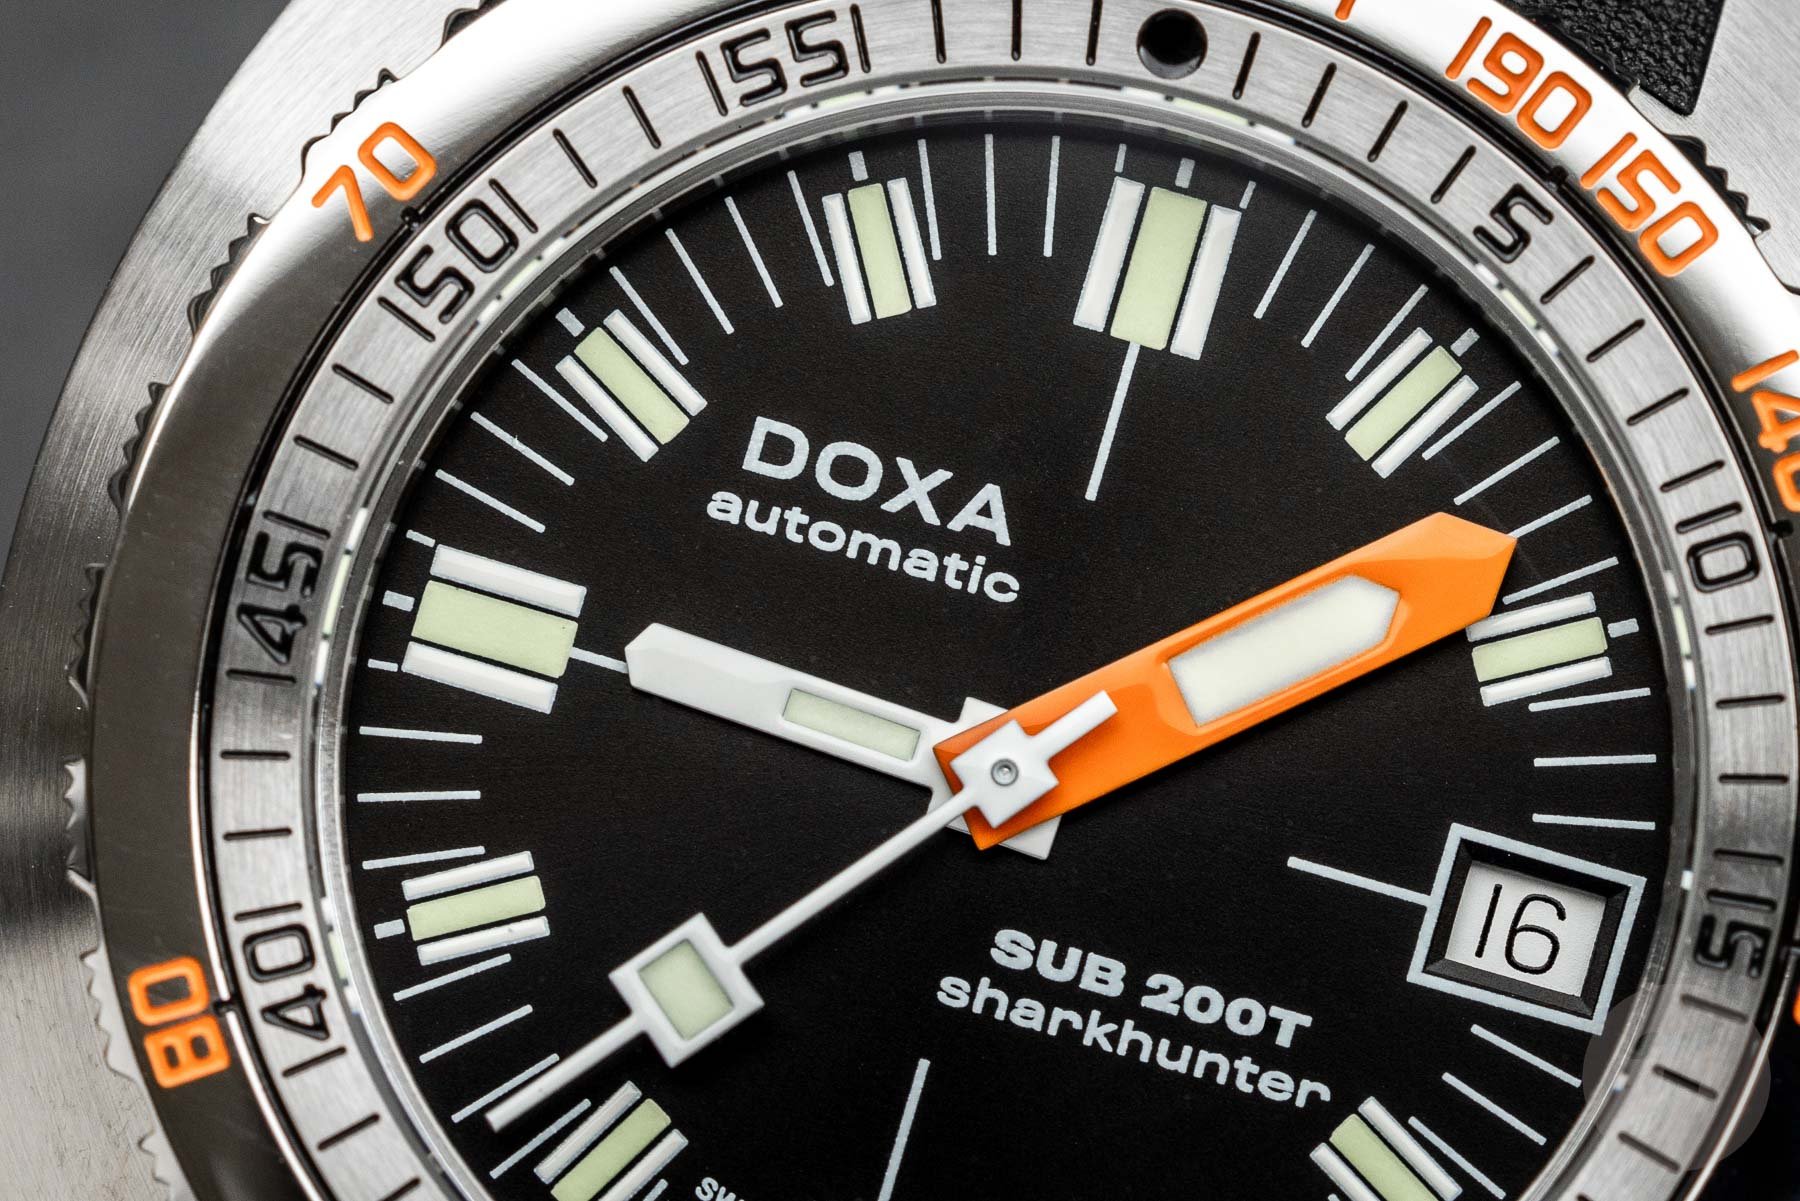 Doxa Sub 200T Sharkhunter dial close-up